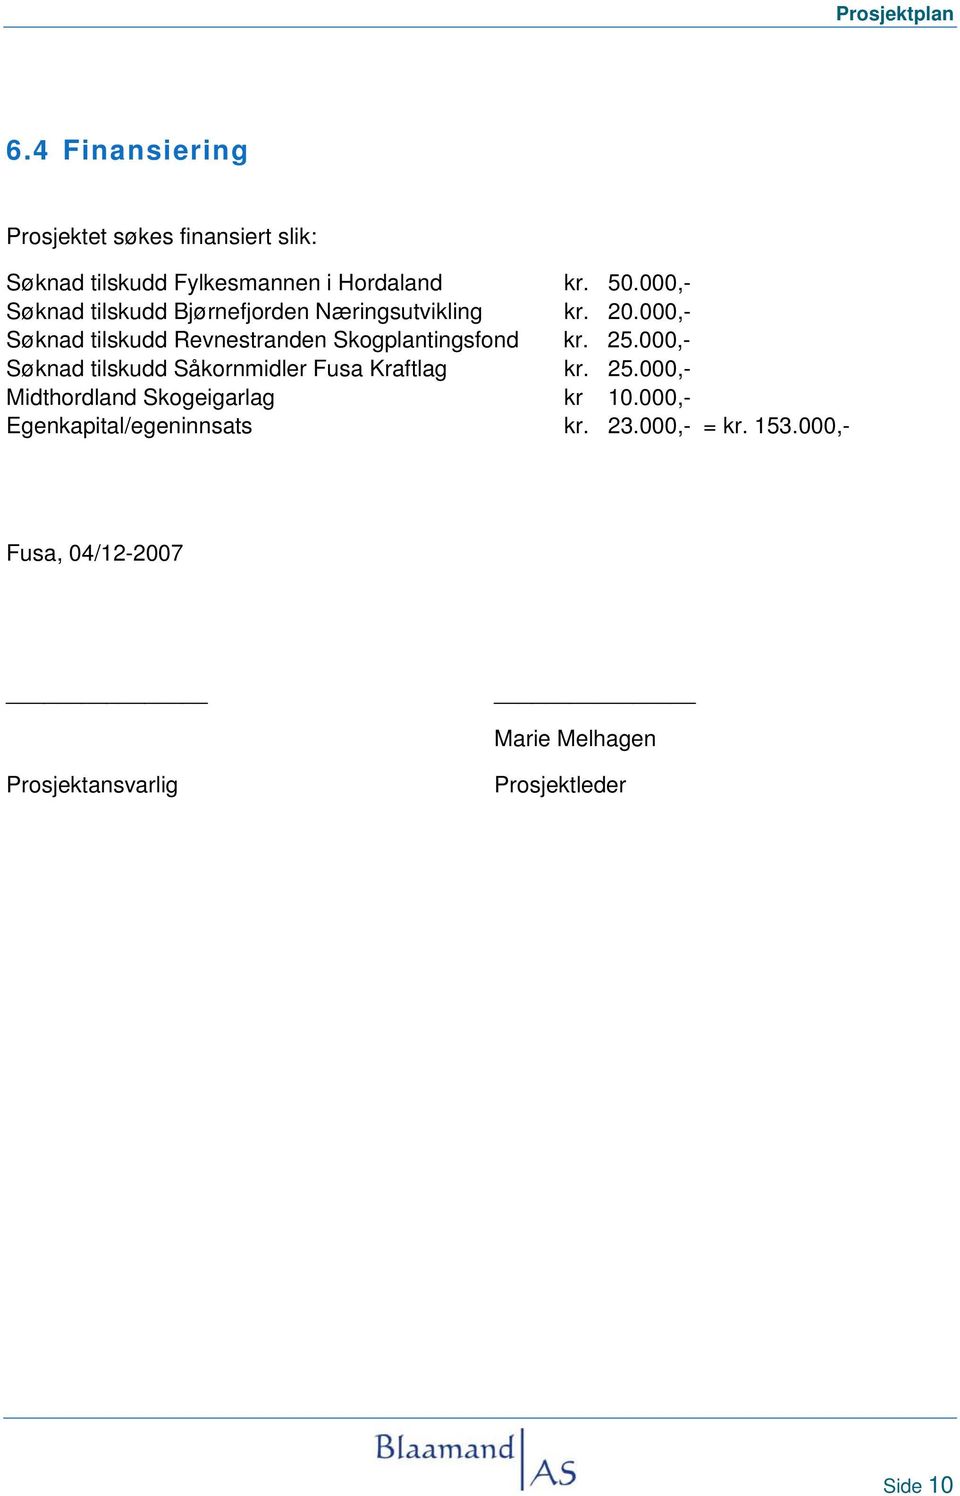 000,- Søknad tilskudd Revnestranden Skogplantingsfond kr. 25.